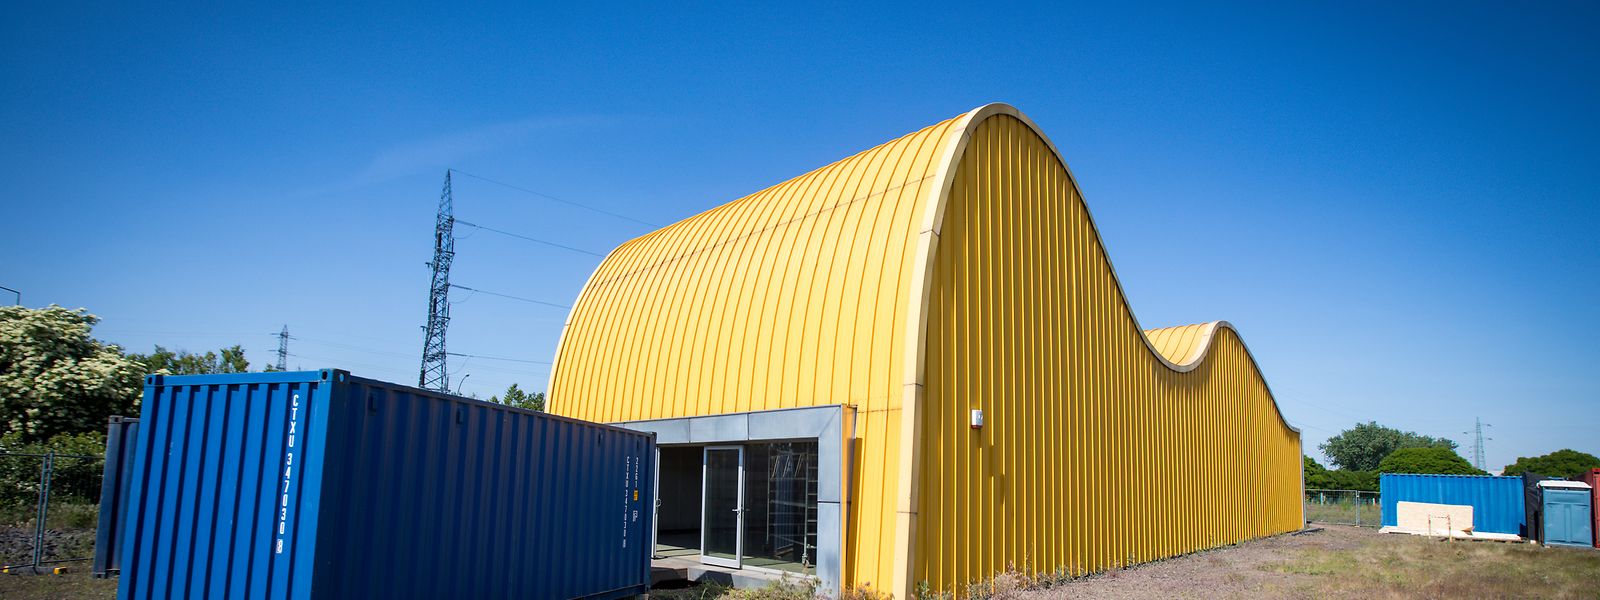 Der Pavillon, dessen Oberfläche mit gelb lackiertem Aluminium verkleidet ist, erinnert an die hügelige Landschaft der Südregion.